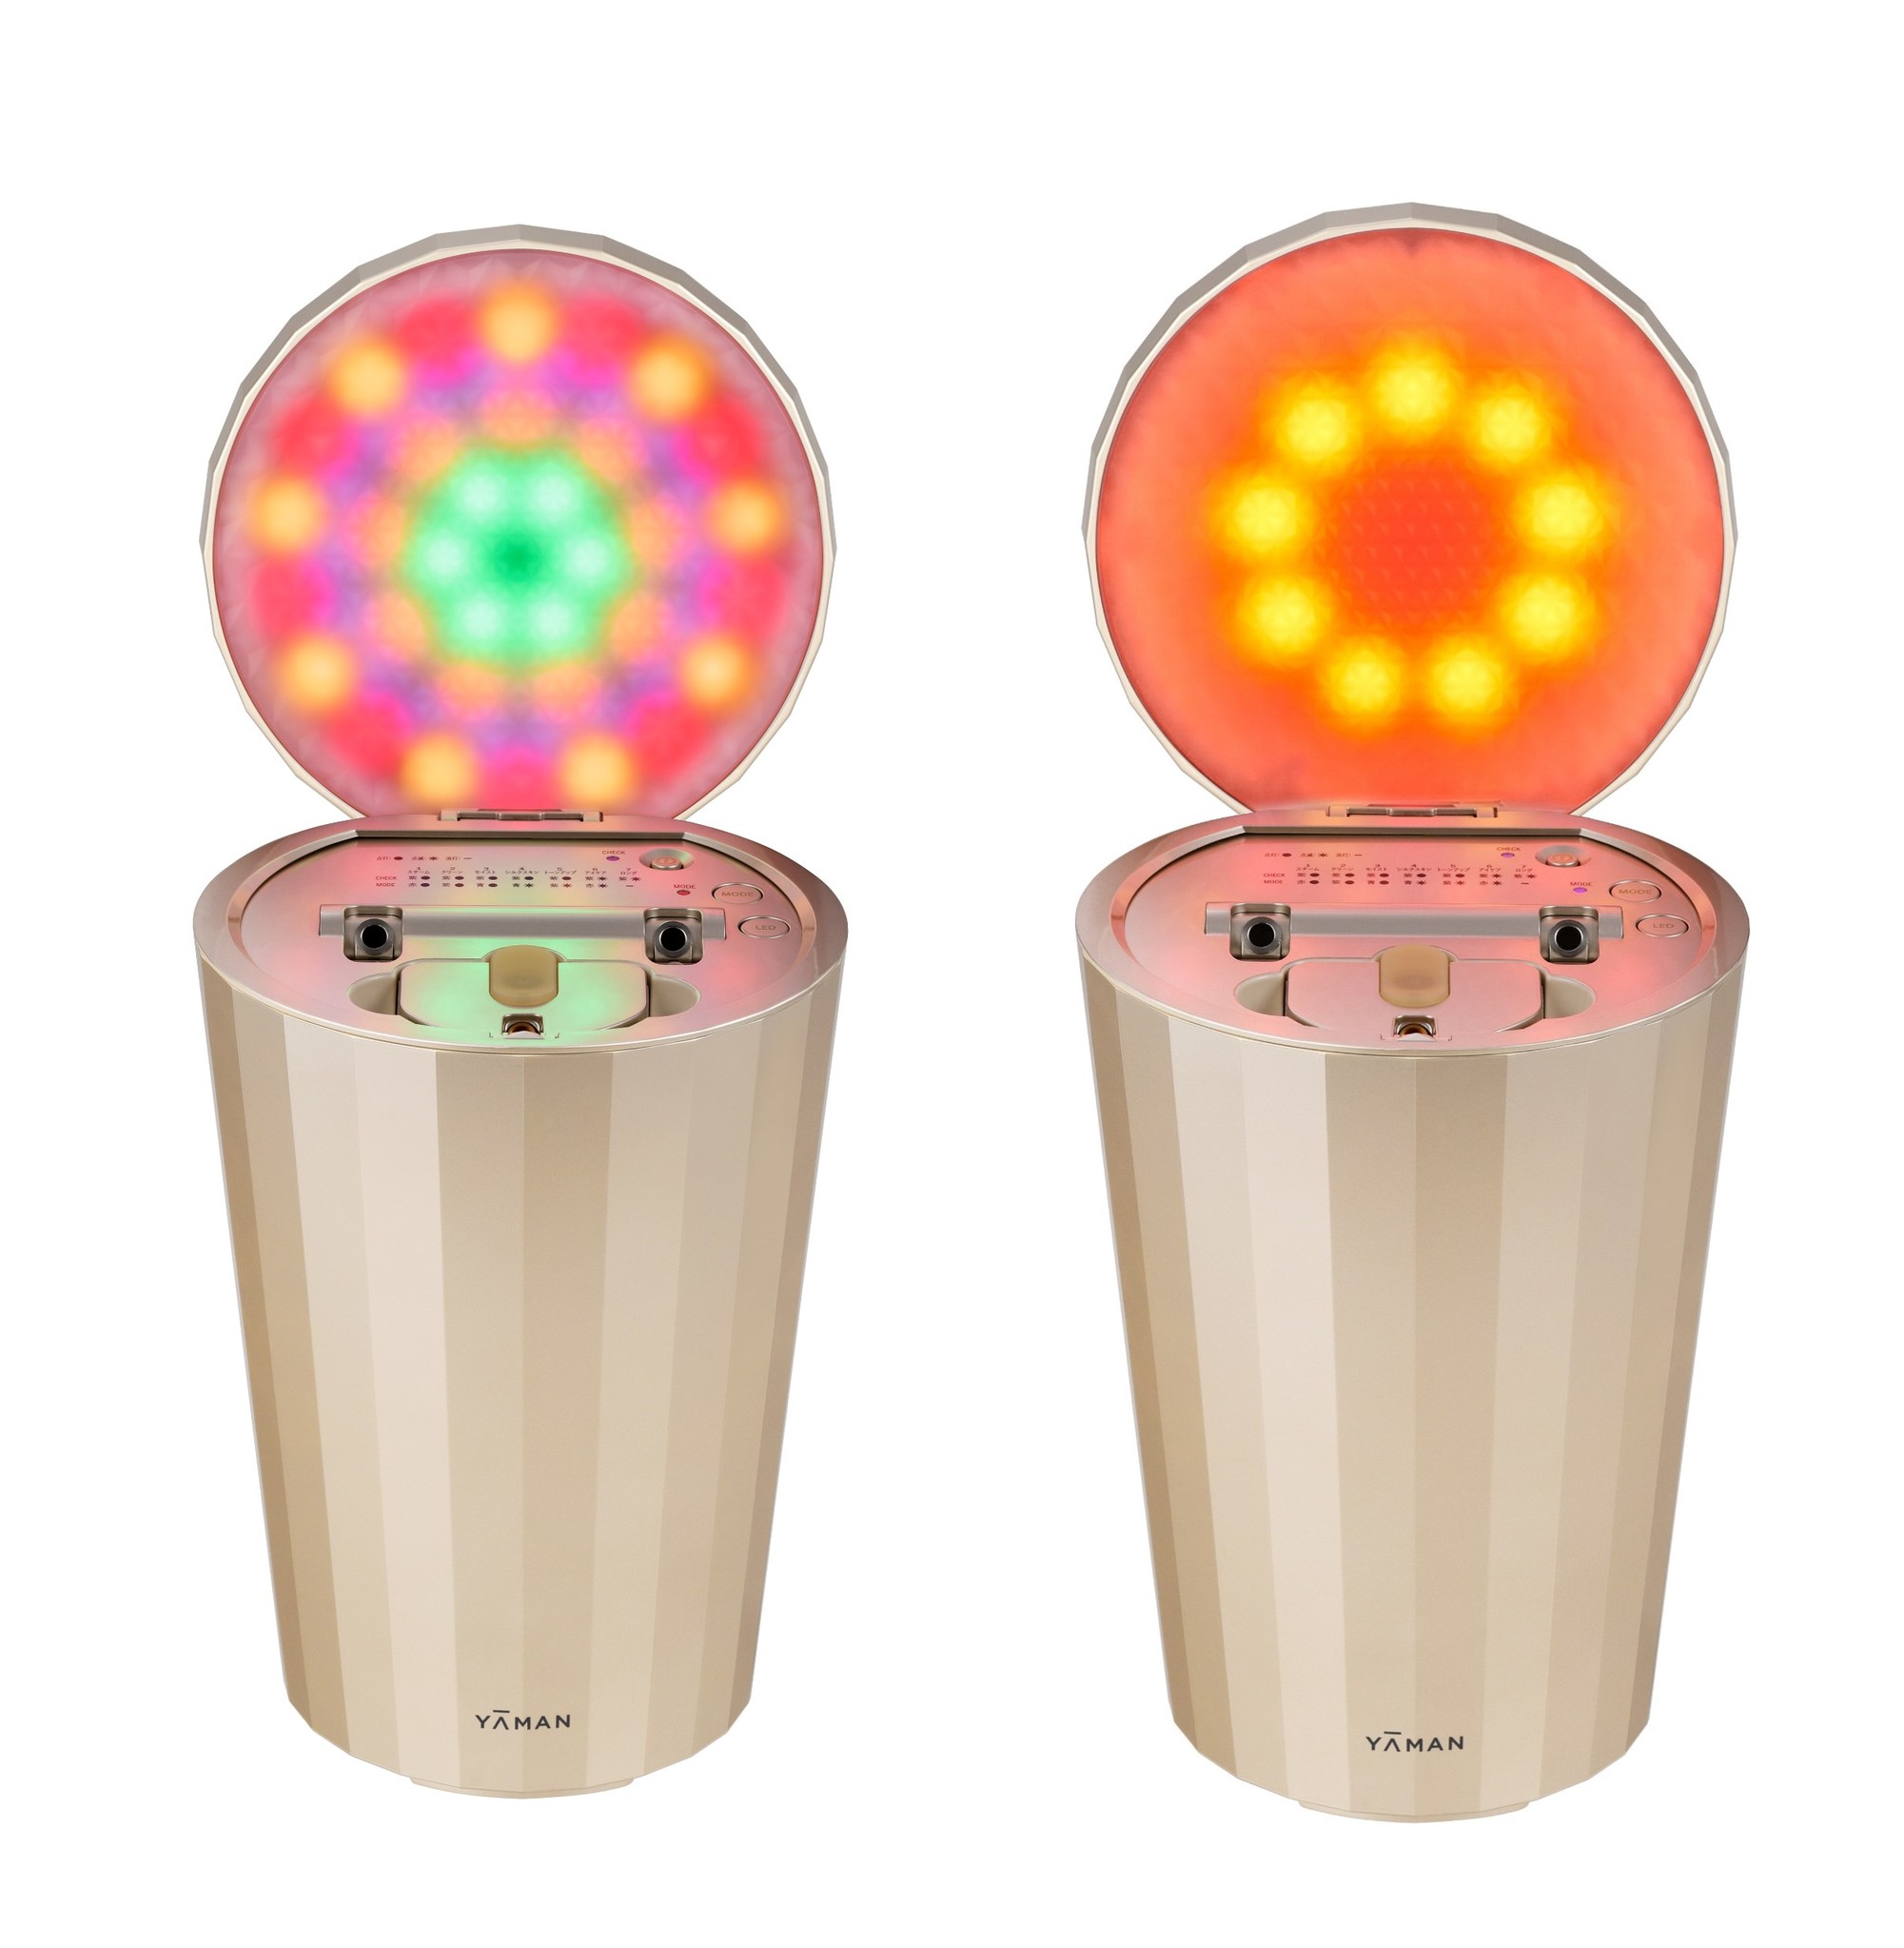 新品同様》 ヤーマン フォトスチーマー LED スチーム美顔器 - 美容/健康